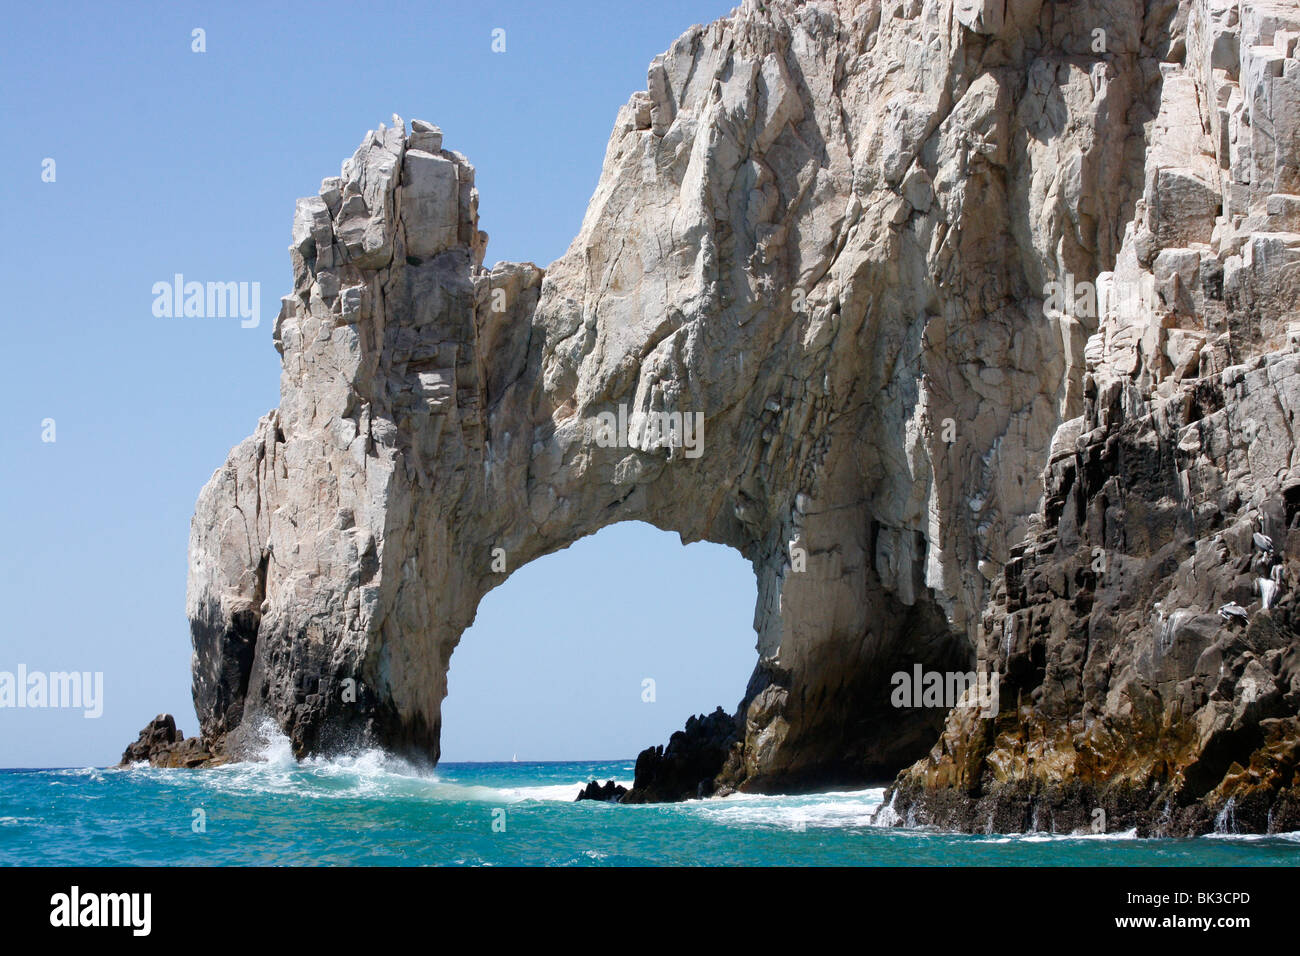 El Arco de Cabo San Lucas,famous rock arch tip of the Baja California peninsular.Mexico. Stock Photo